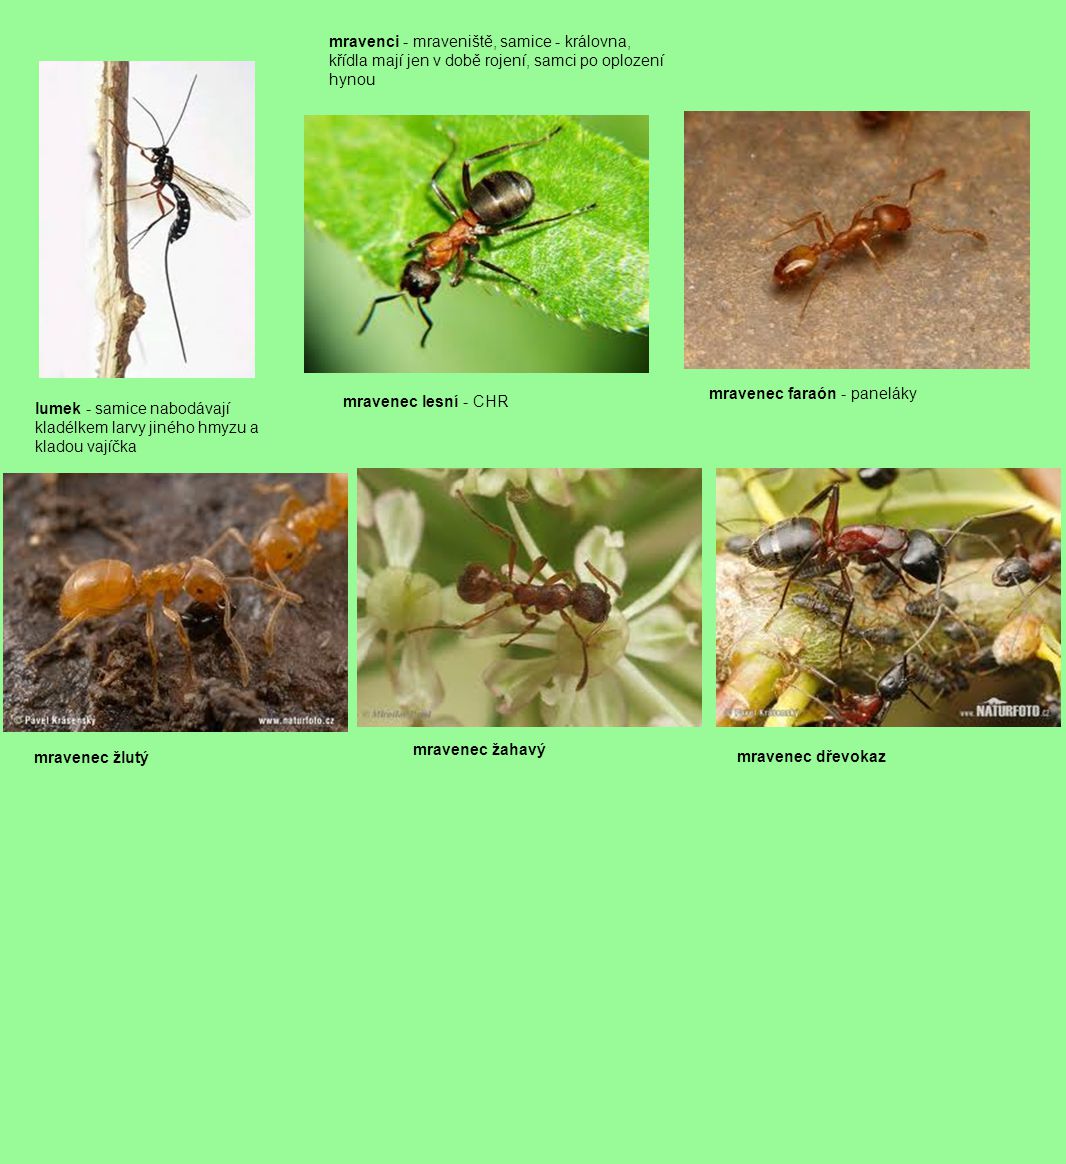 mravenci - mraveniště, samice - královna, křídla mají jen v době rojení, samci po oplození hynou